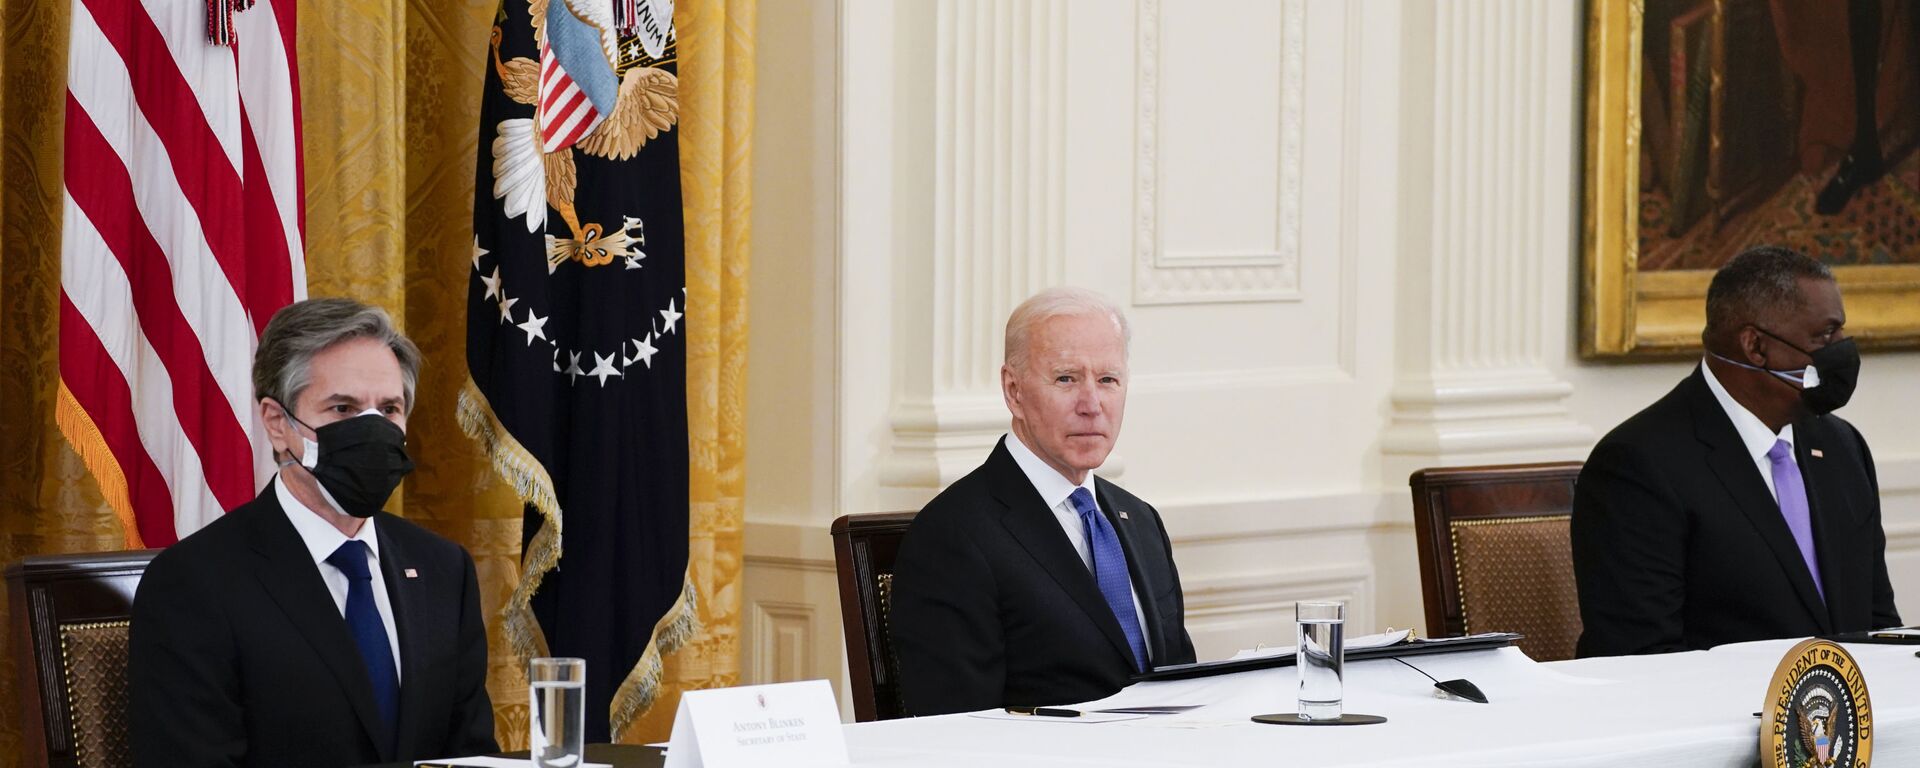 ABD Başkanı Joe Biden, ilk kabine toplantısını Beyaz Saray'da yeni tip koronavirüs (Kovid-19) önlemleri altında gerçekleştirdi. - Sputnik Türkiye, 1920, 15.06.2021